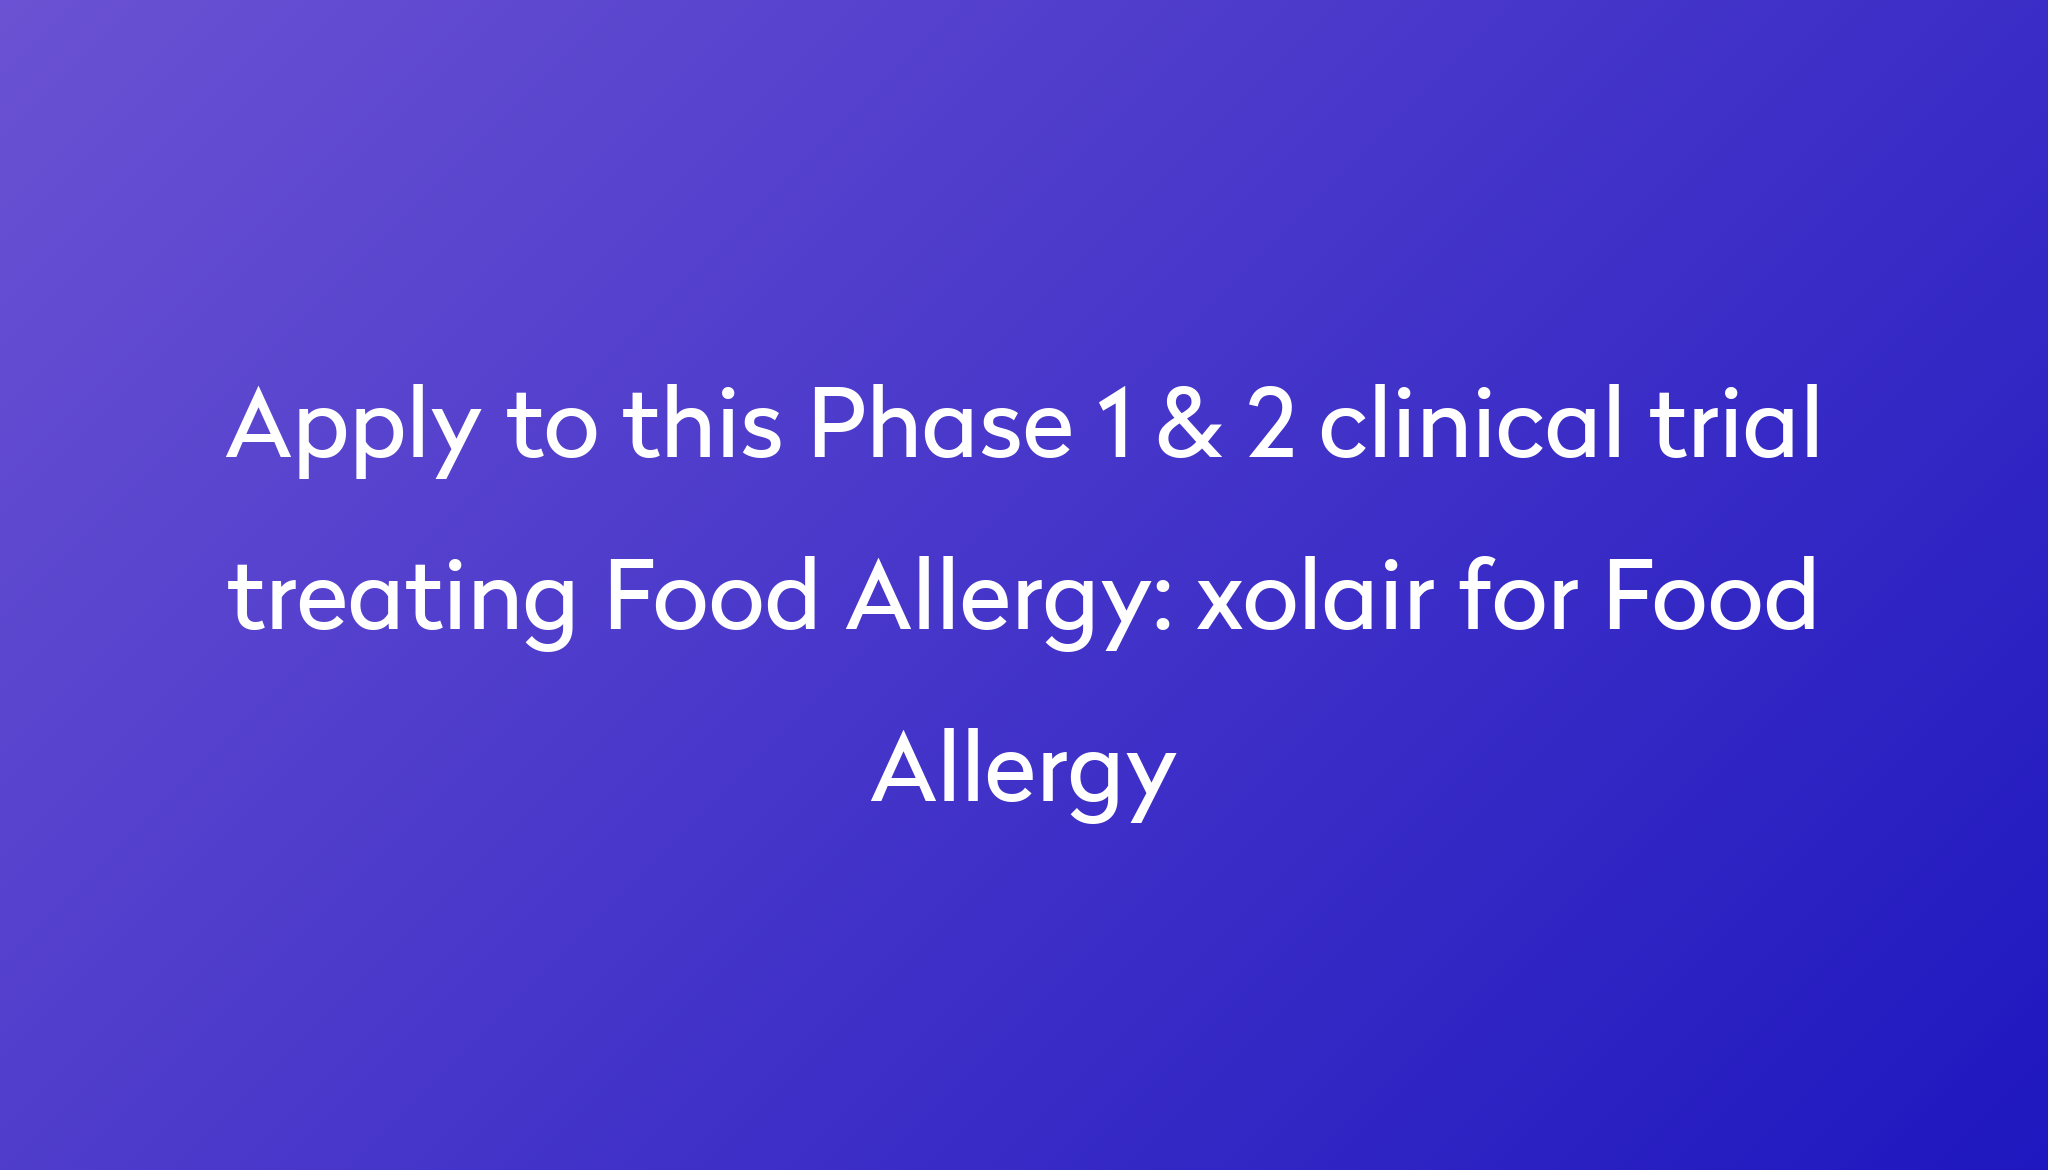 xolair for Food Allergy Clinical Trial 2023 Power